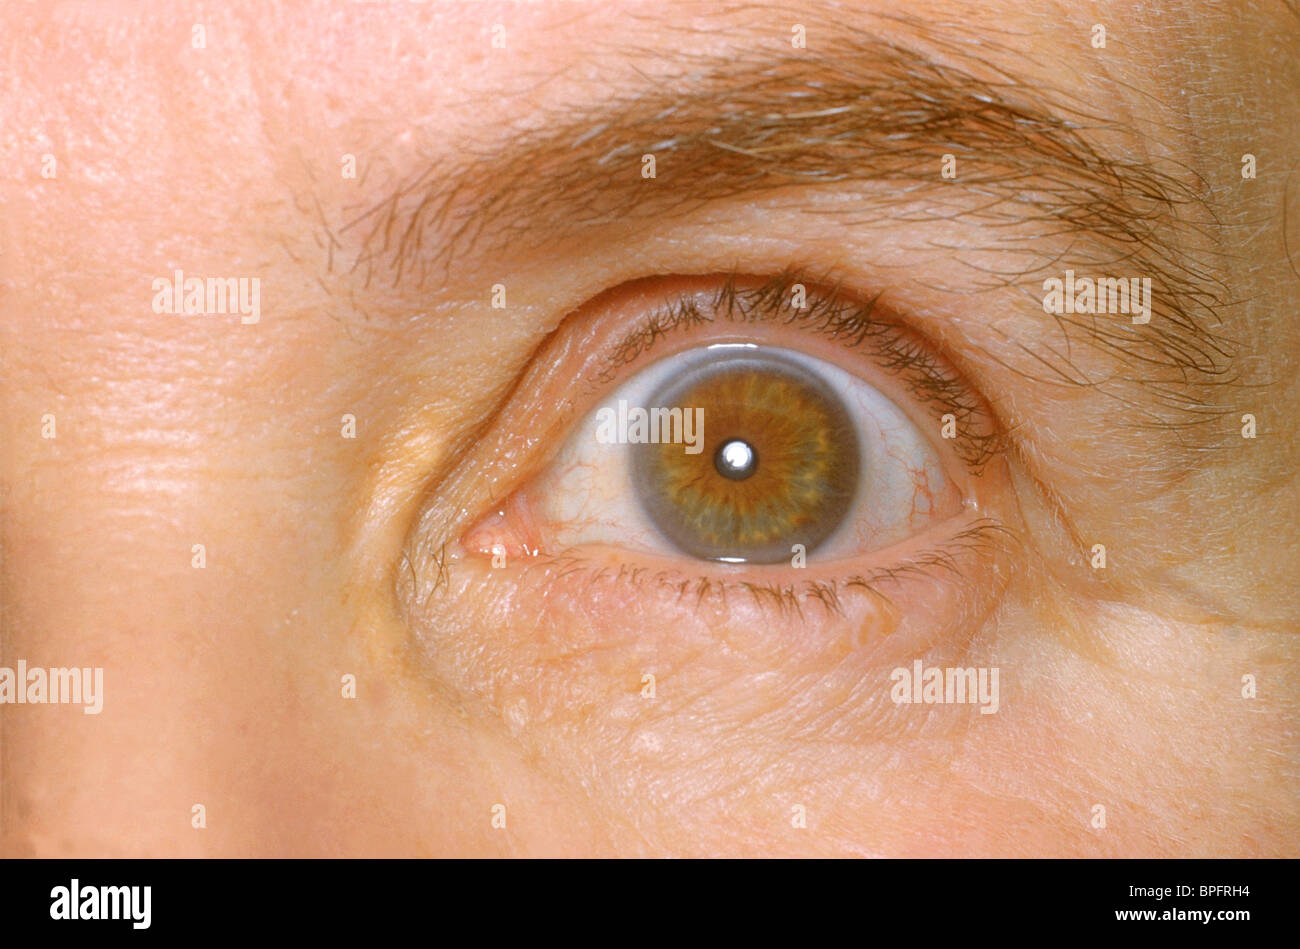 L'occhio sinistro di un paziente che mostra gli effetti di livelli anormalmente elevati di colesterolo nel sangue. Foto Stock